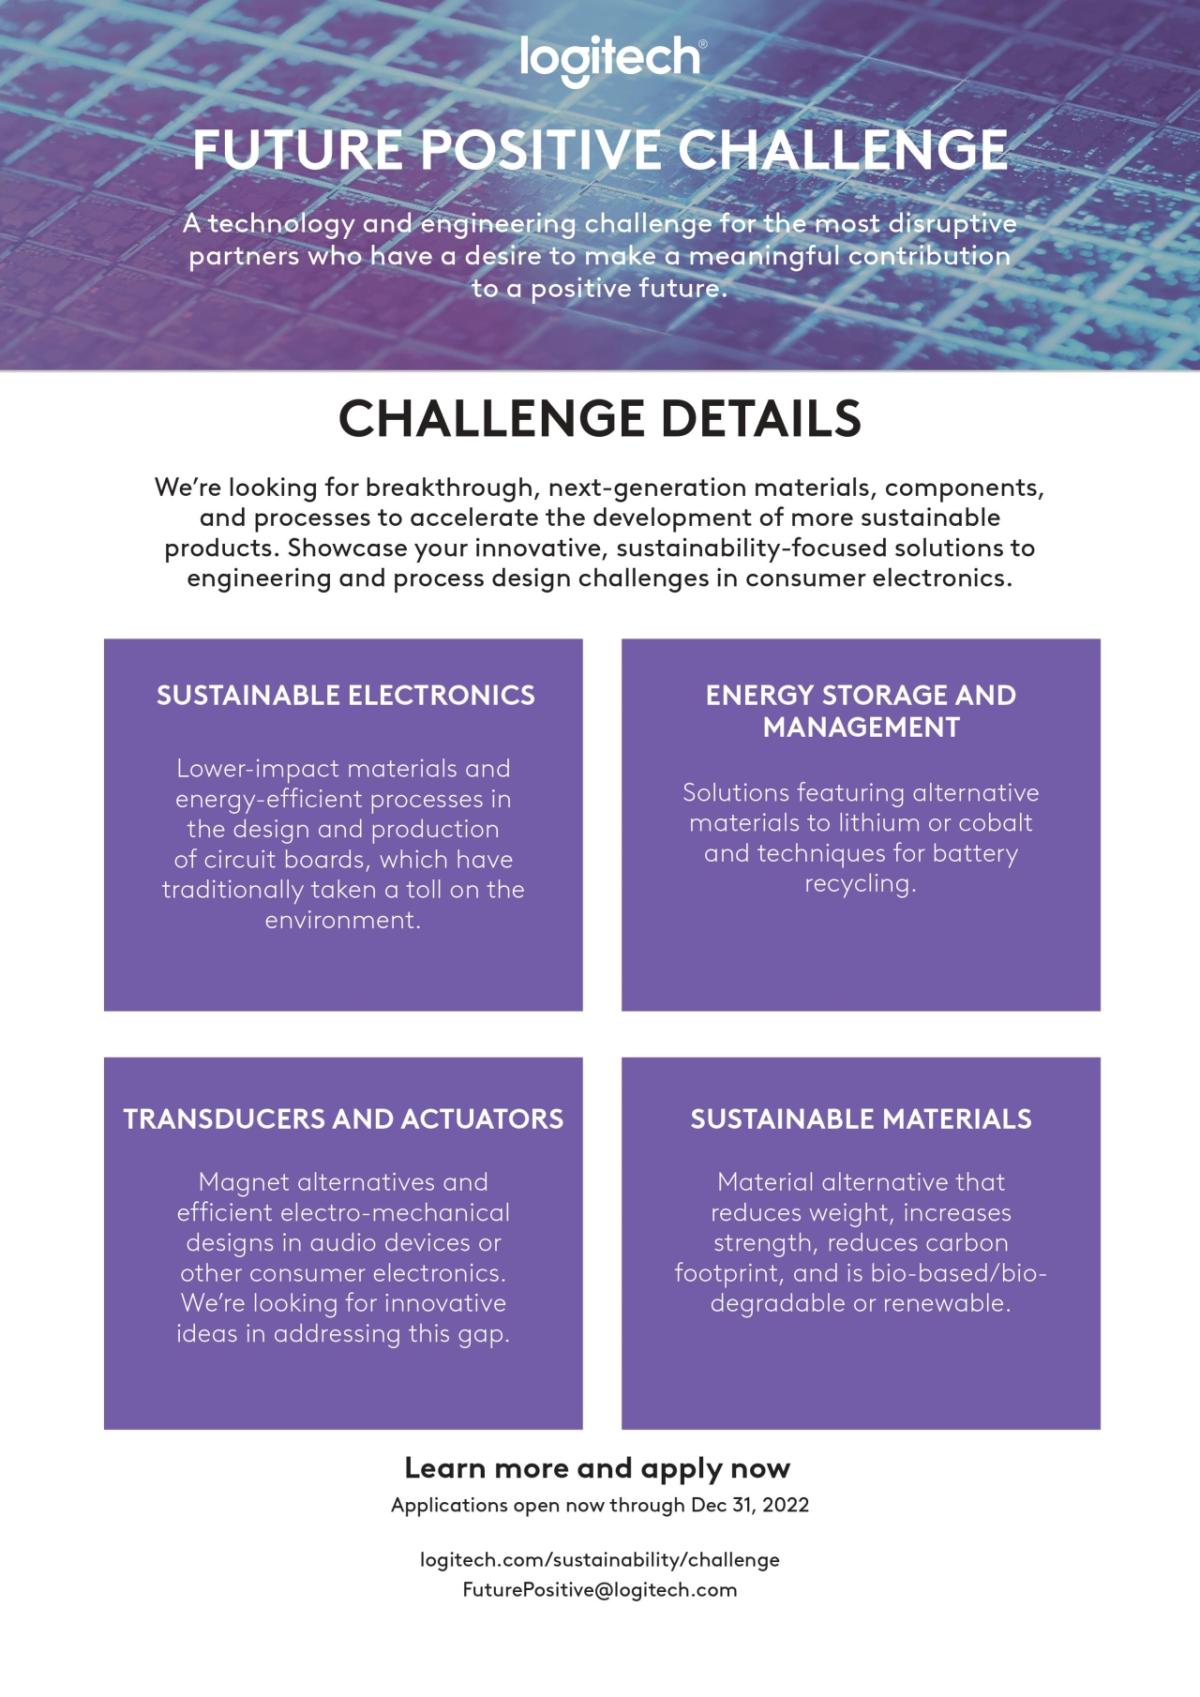 Logitech Announces Future Positive Technology Challenge